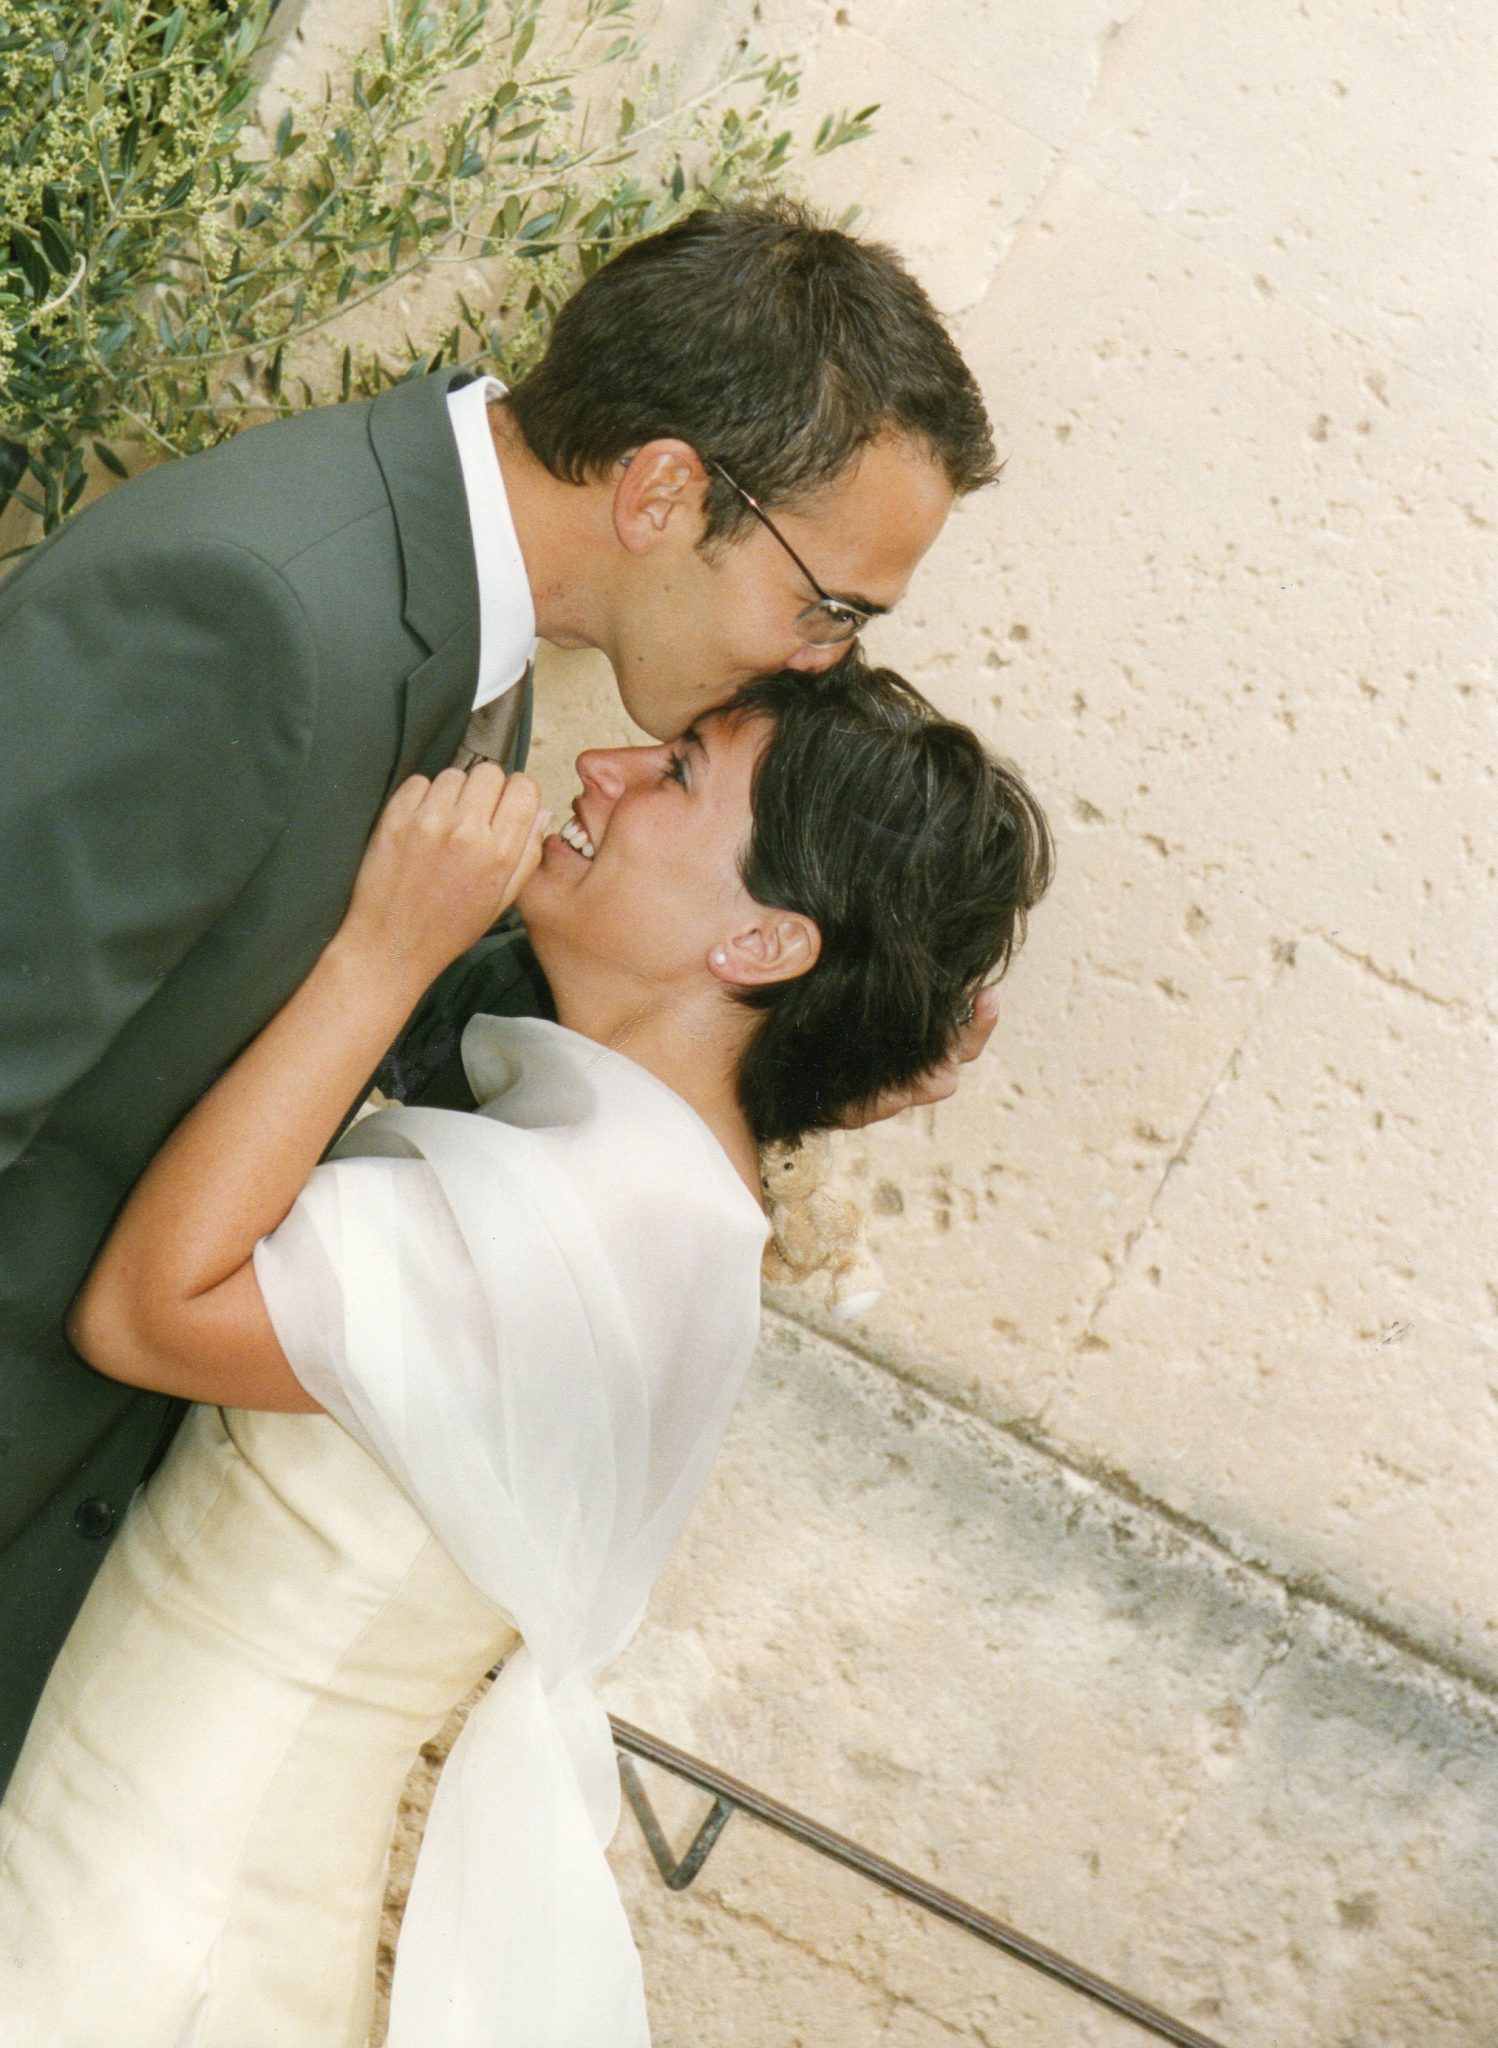 Notre mariage aux Baux-de-Provence - Blog Mariage Madame C